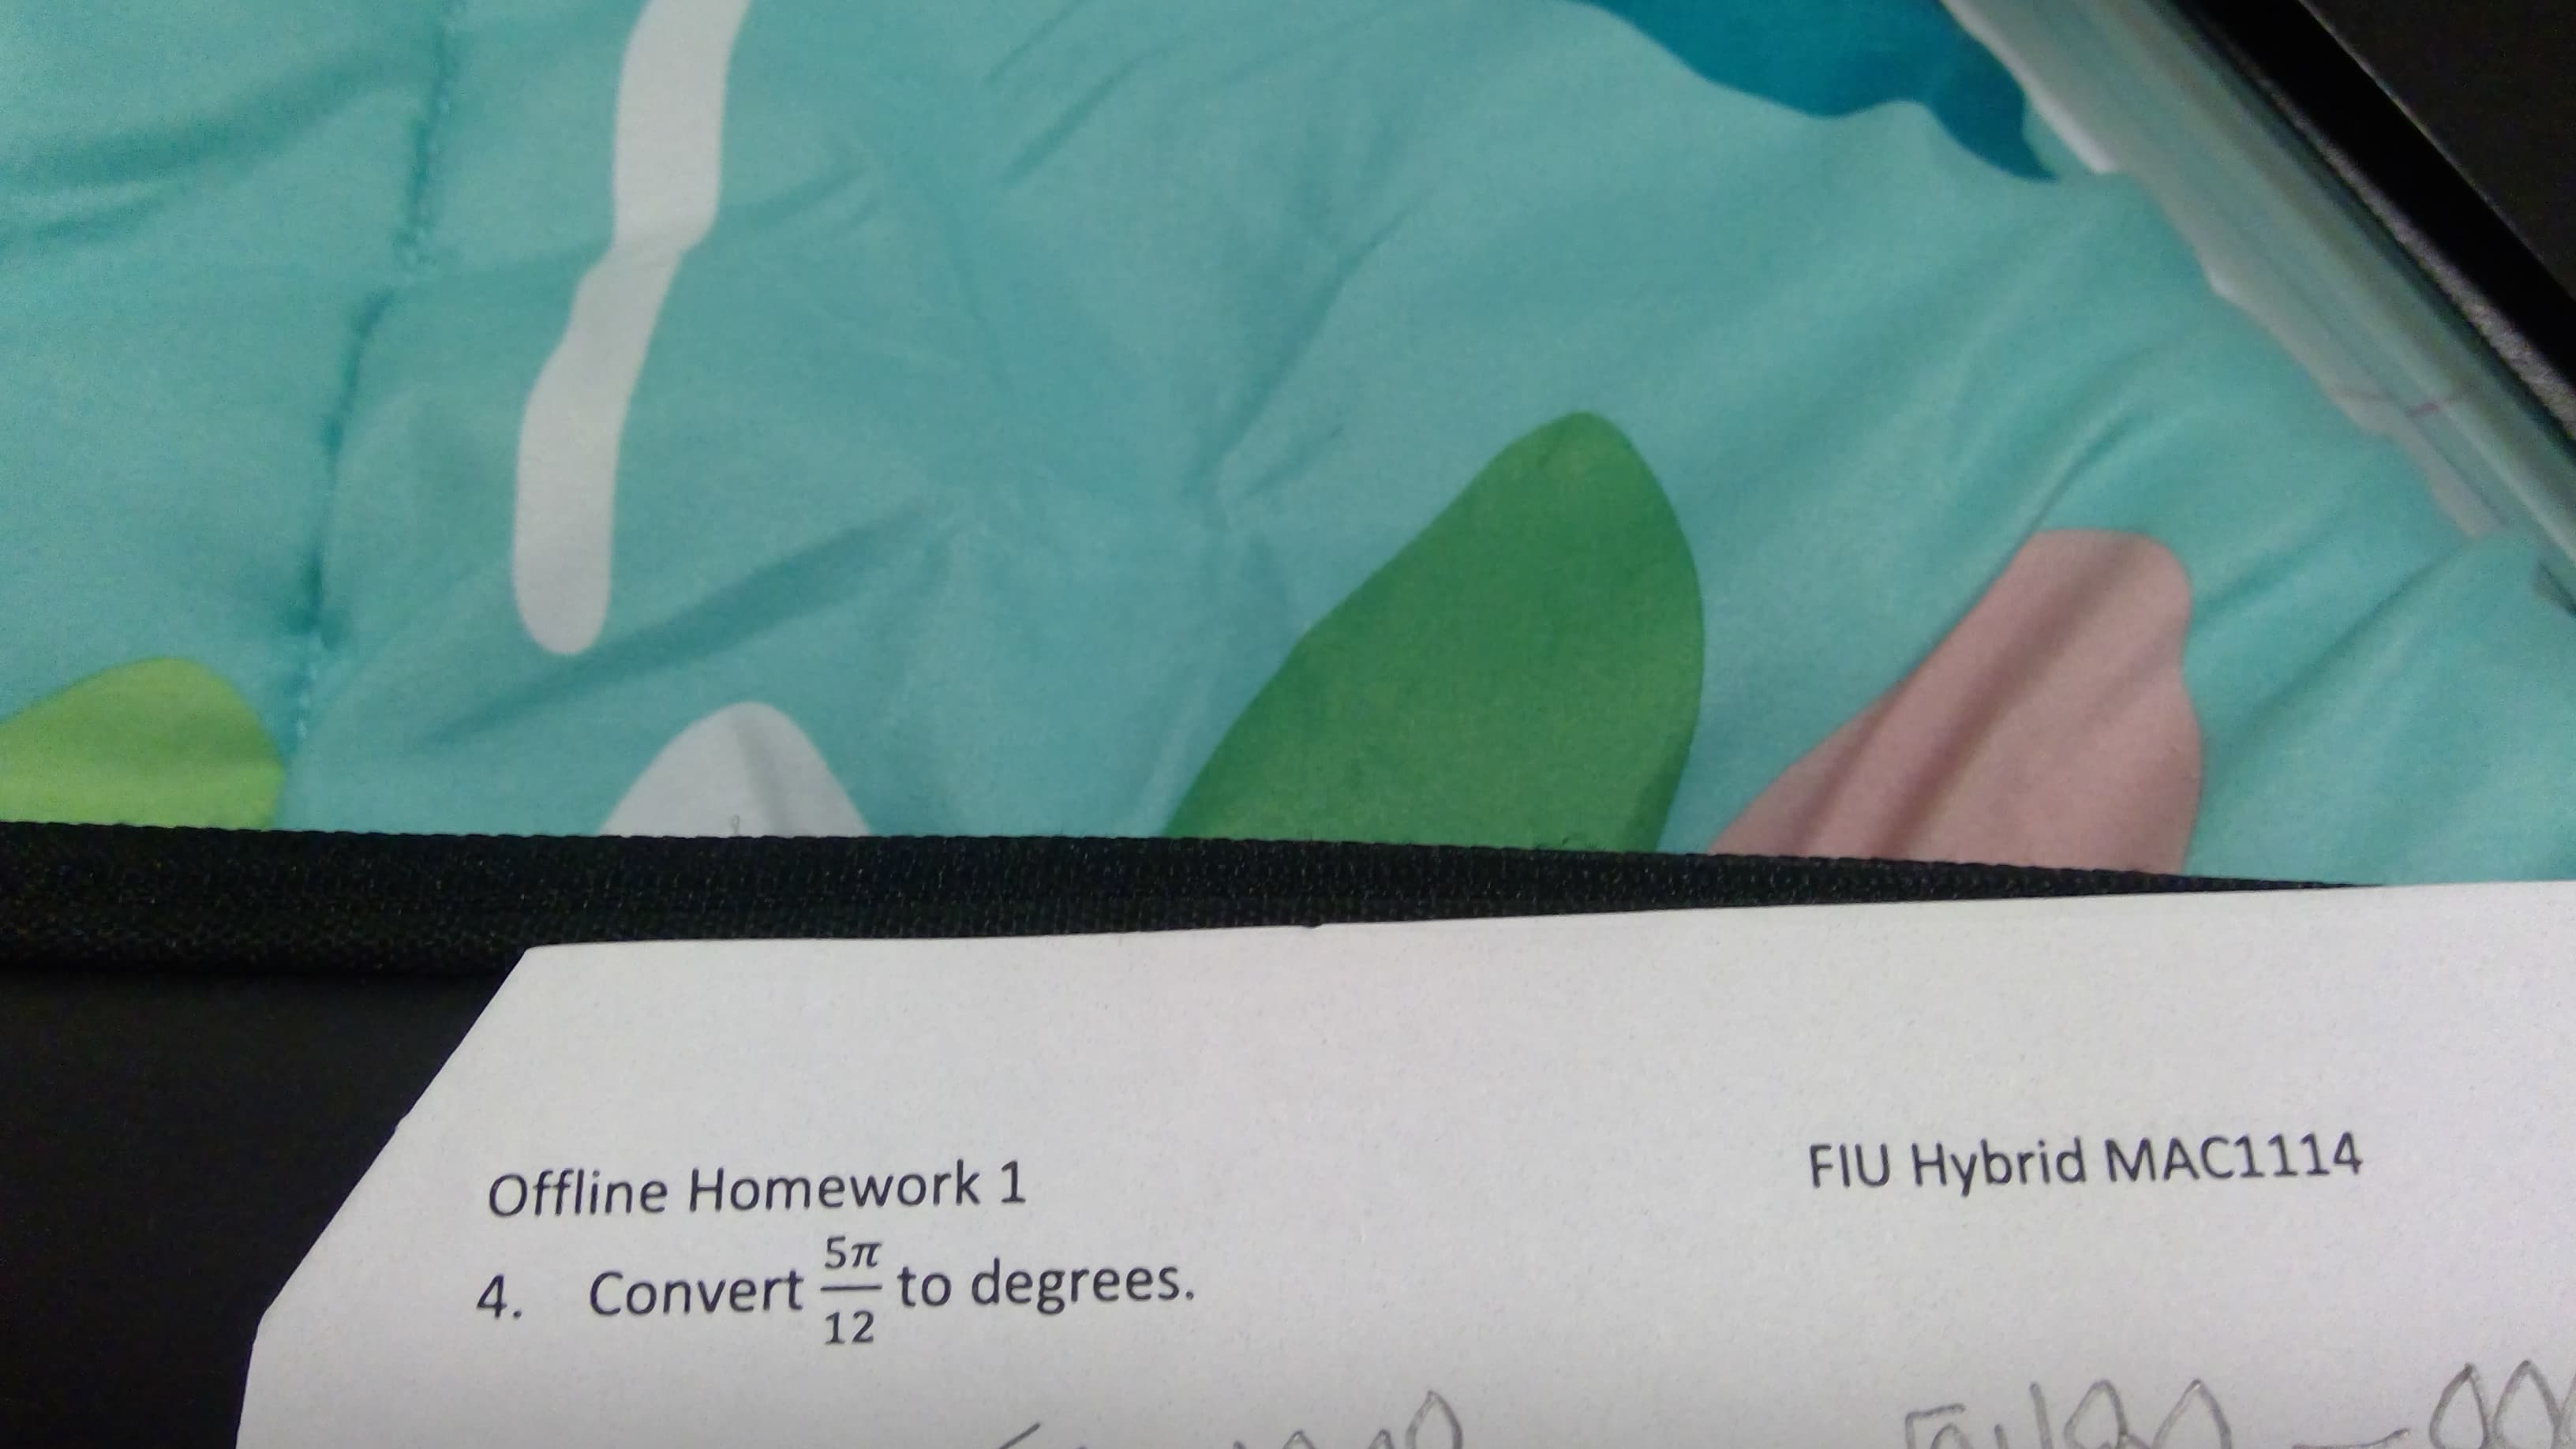 Offline Homework 1
FIU Hybrid MAC1114
5TT
to degrees.
12
4. Convert
